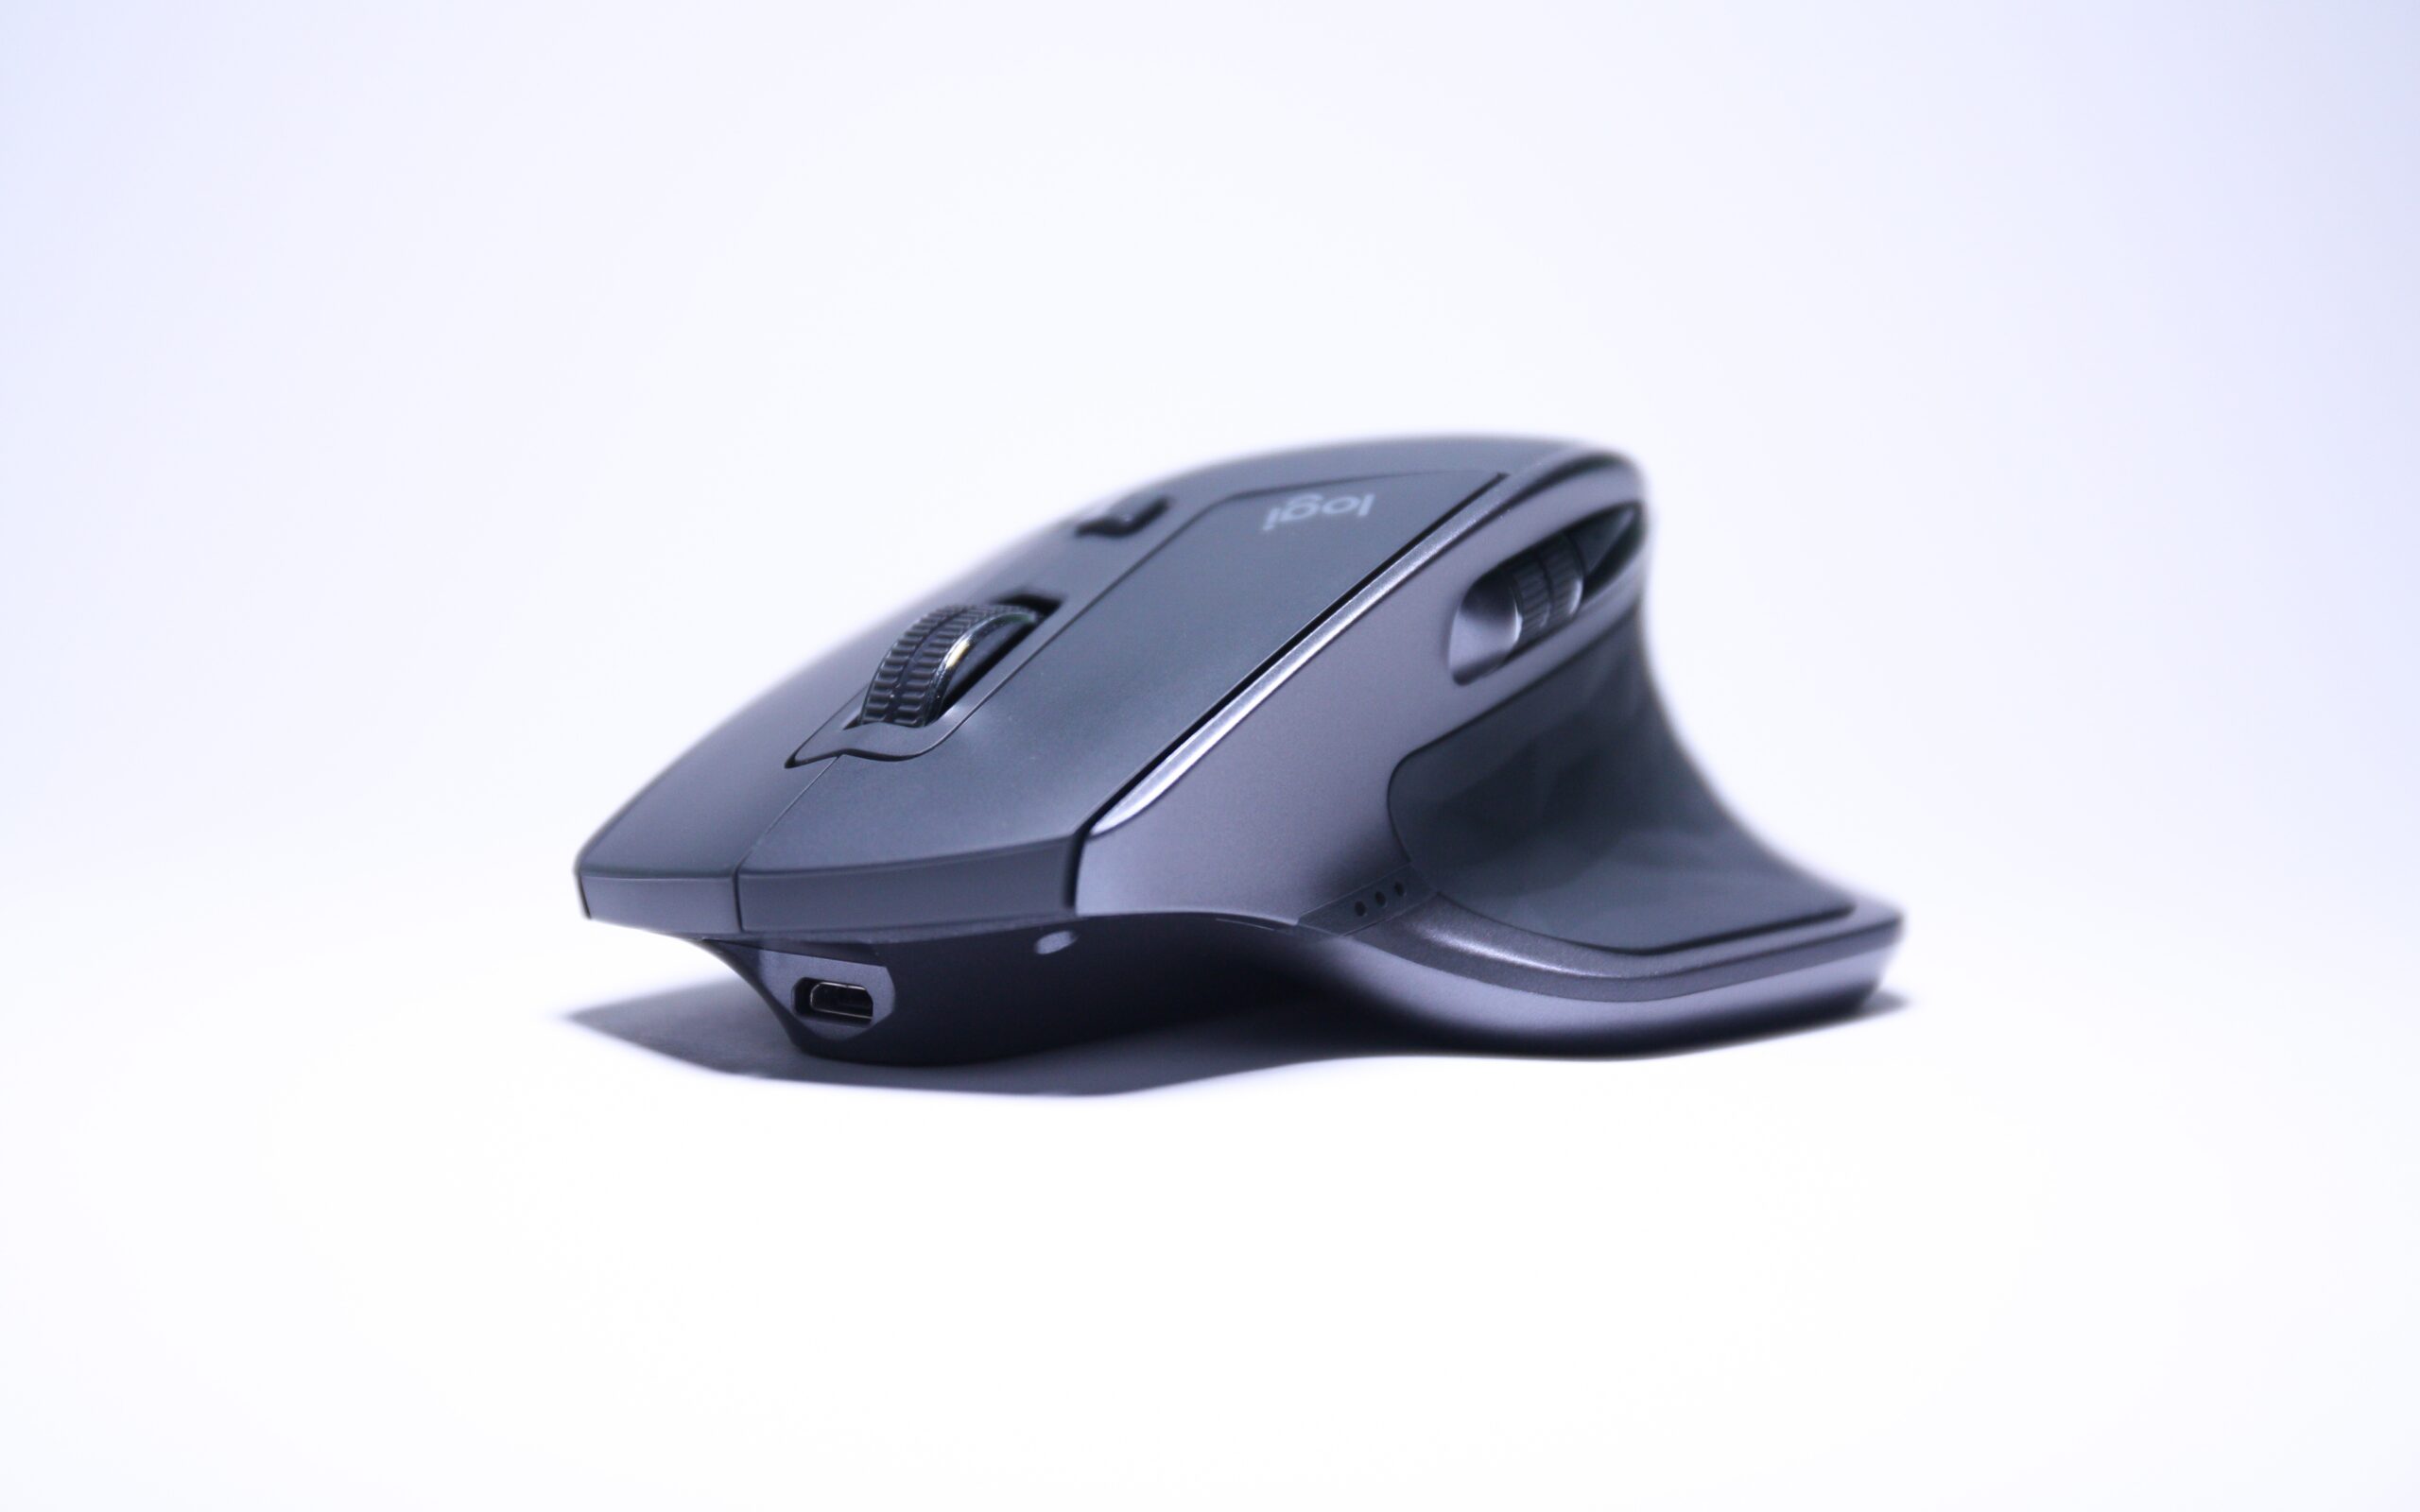 Logitech MX Master 3S e Logitech Lift (verticale): perché sono i migliori  mouse per l'uso professionale e come sfruttare gli sconti di